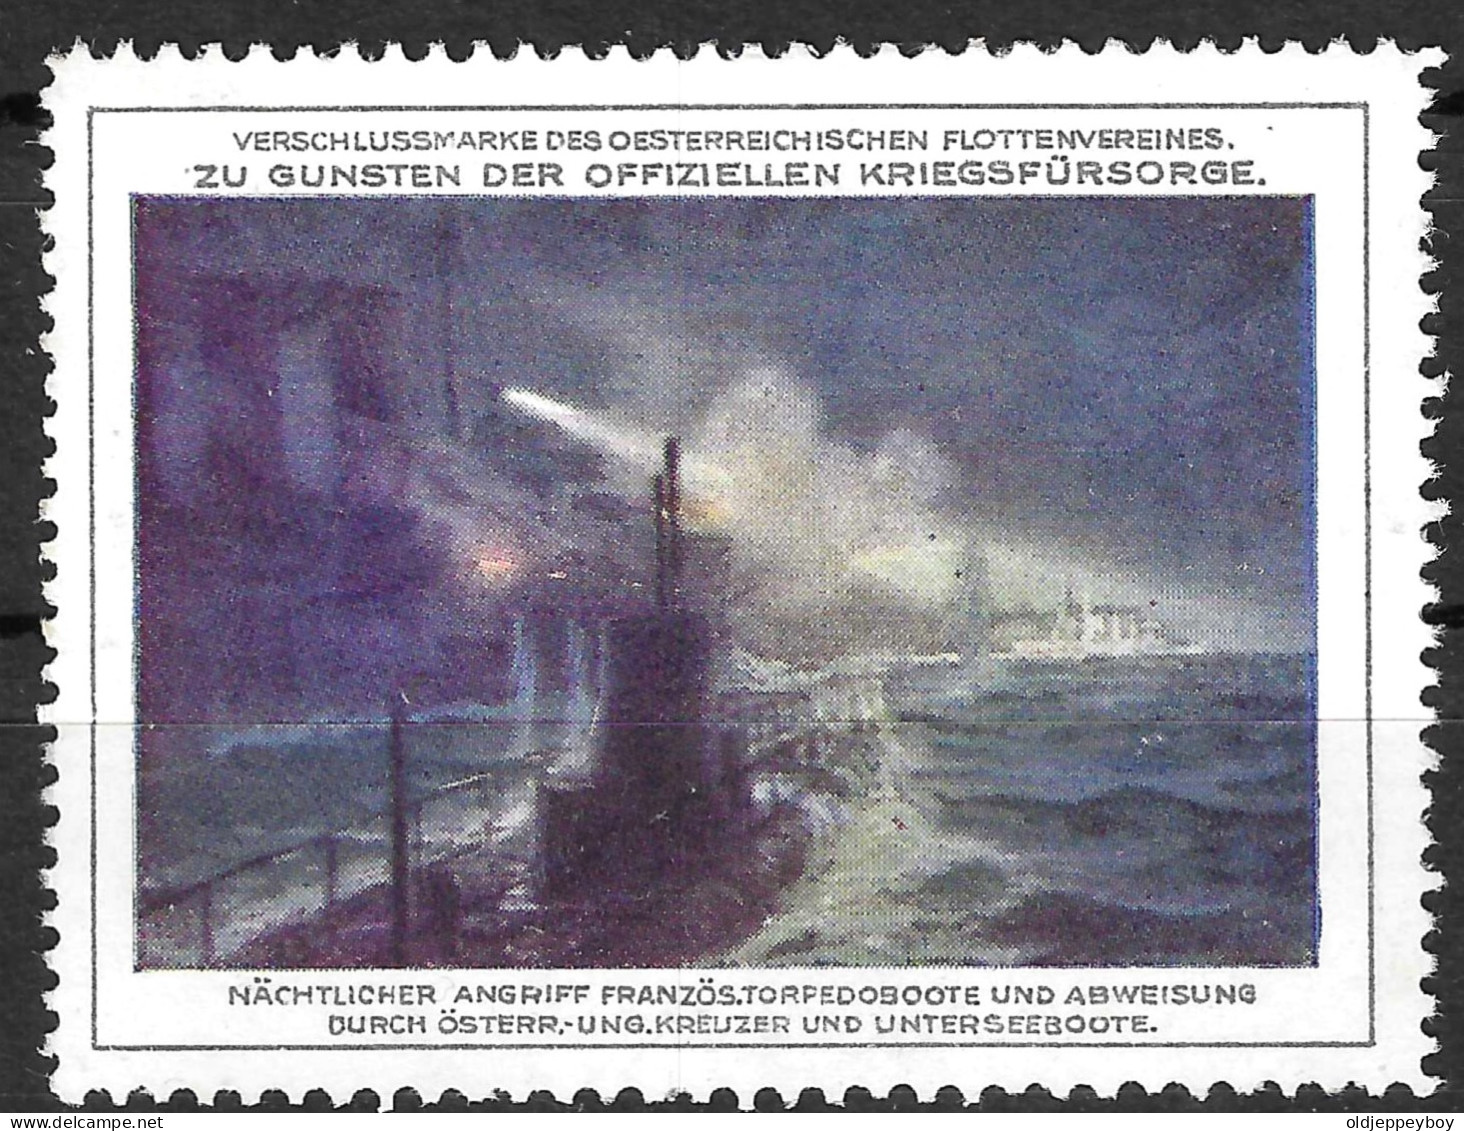 1914- 1918 WW1 Era GERMANY Vignette Reklamemarke OFFIZIELLEN KRIEGSFURSORGE FLOTTENVEREINES U-BOAT ATTACK - Militaria